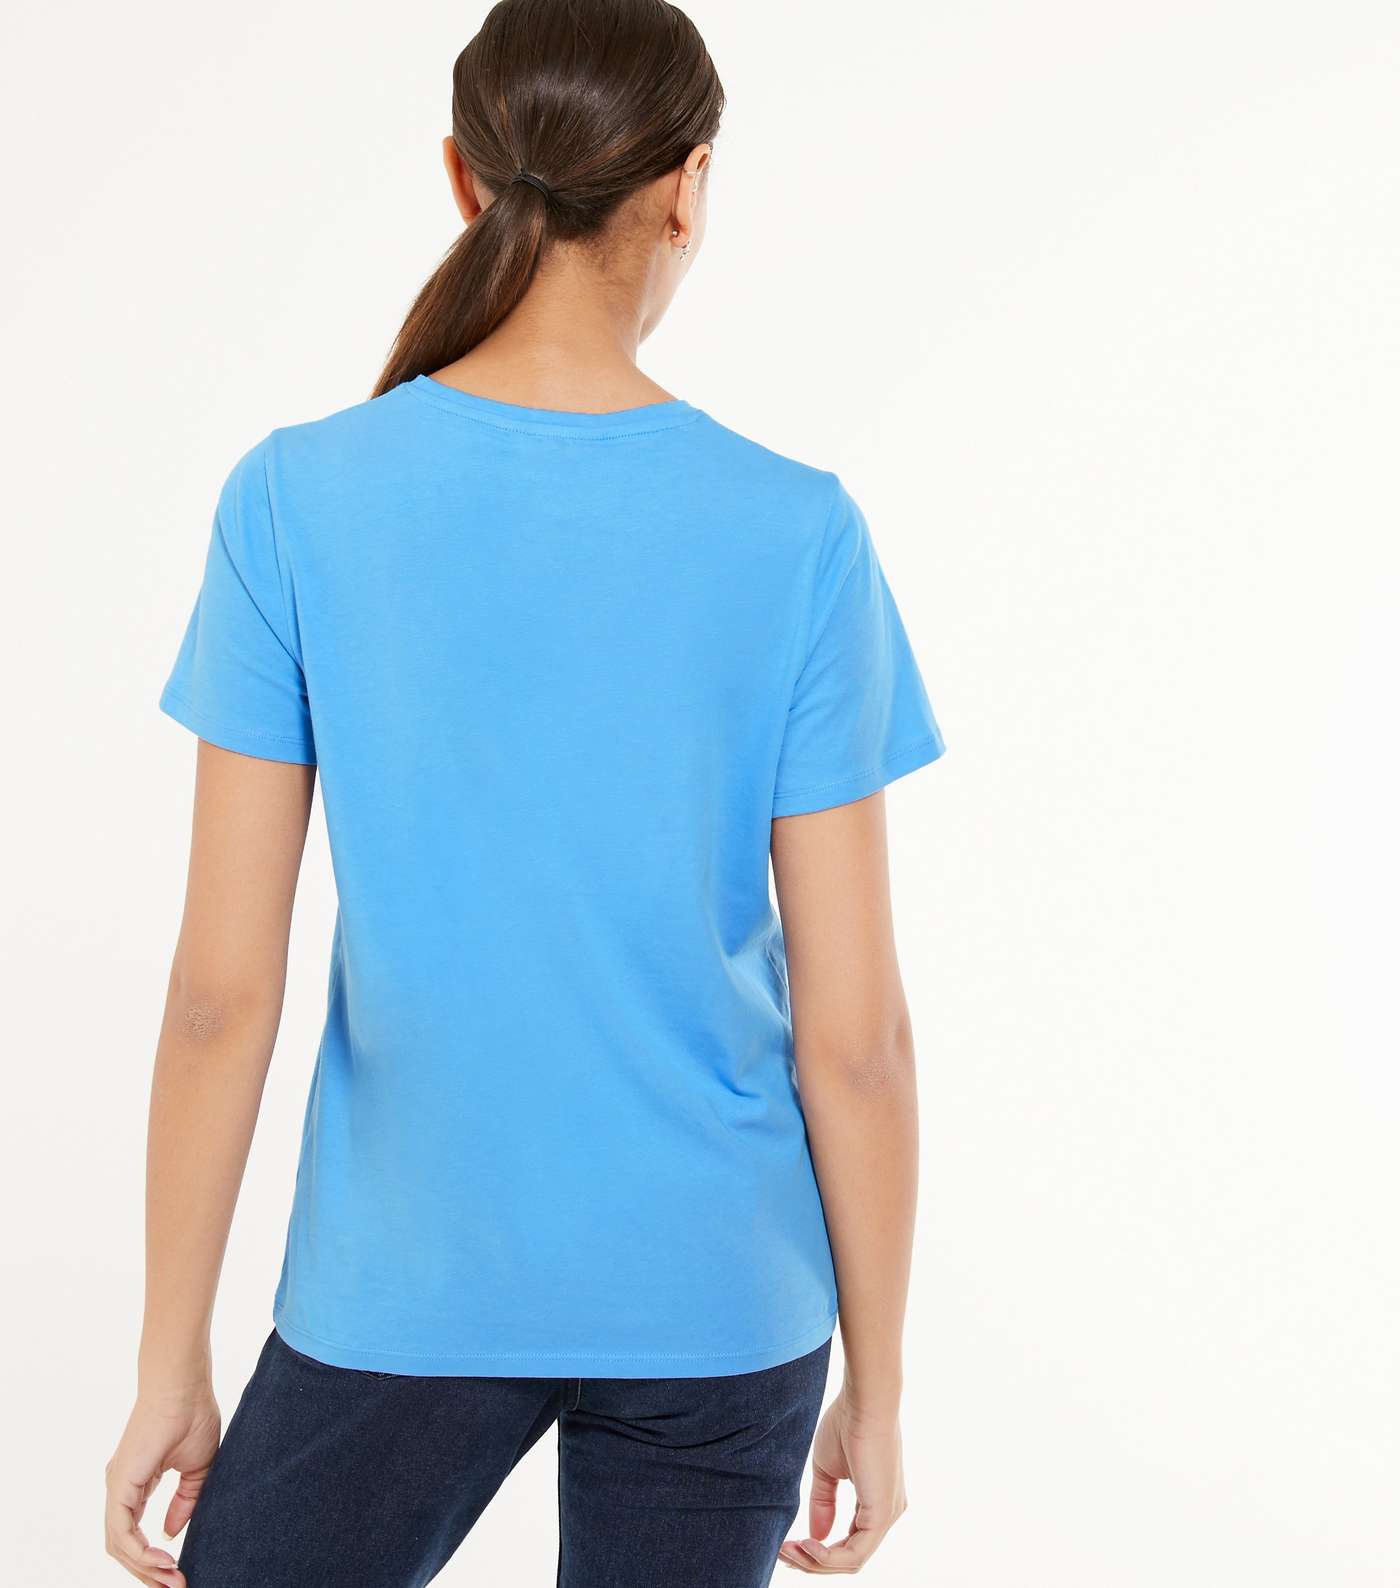 Blue Basic Cotton T-Shirt Image 3